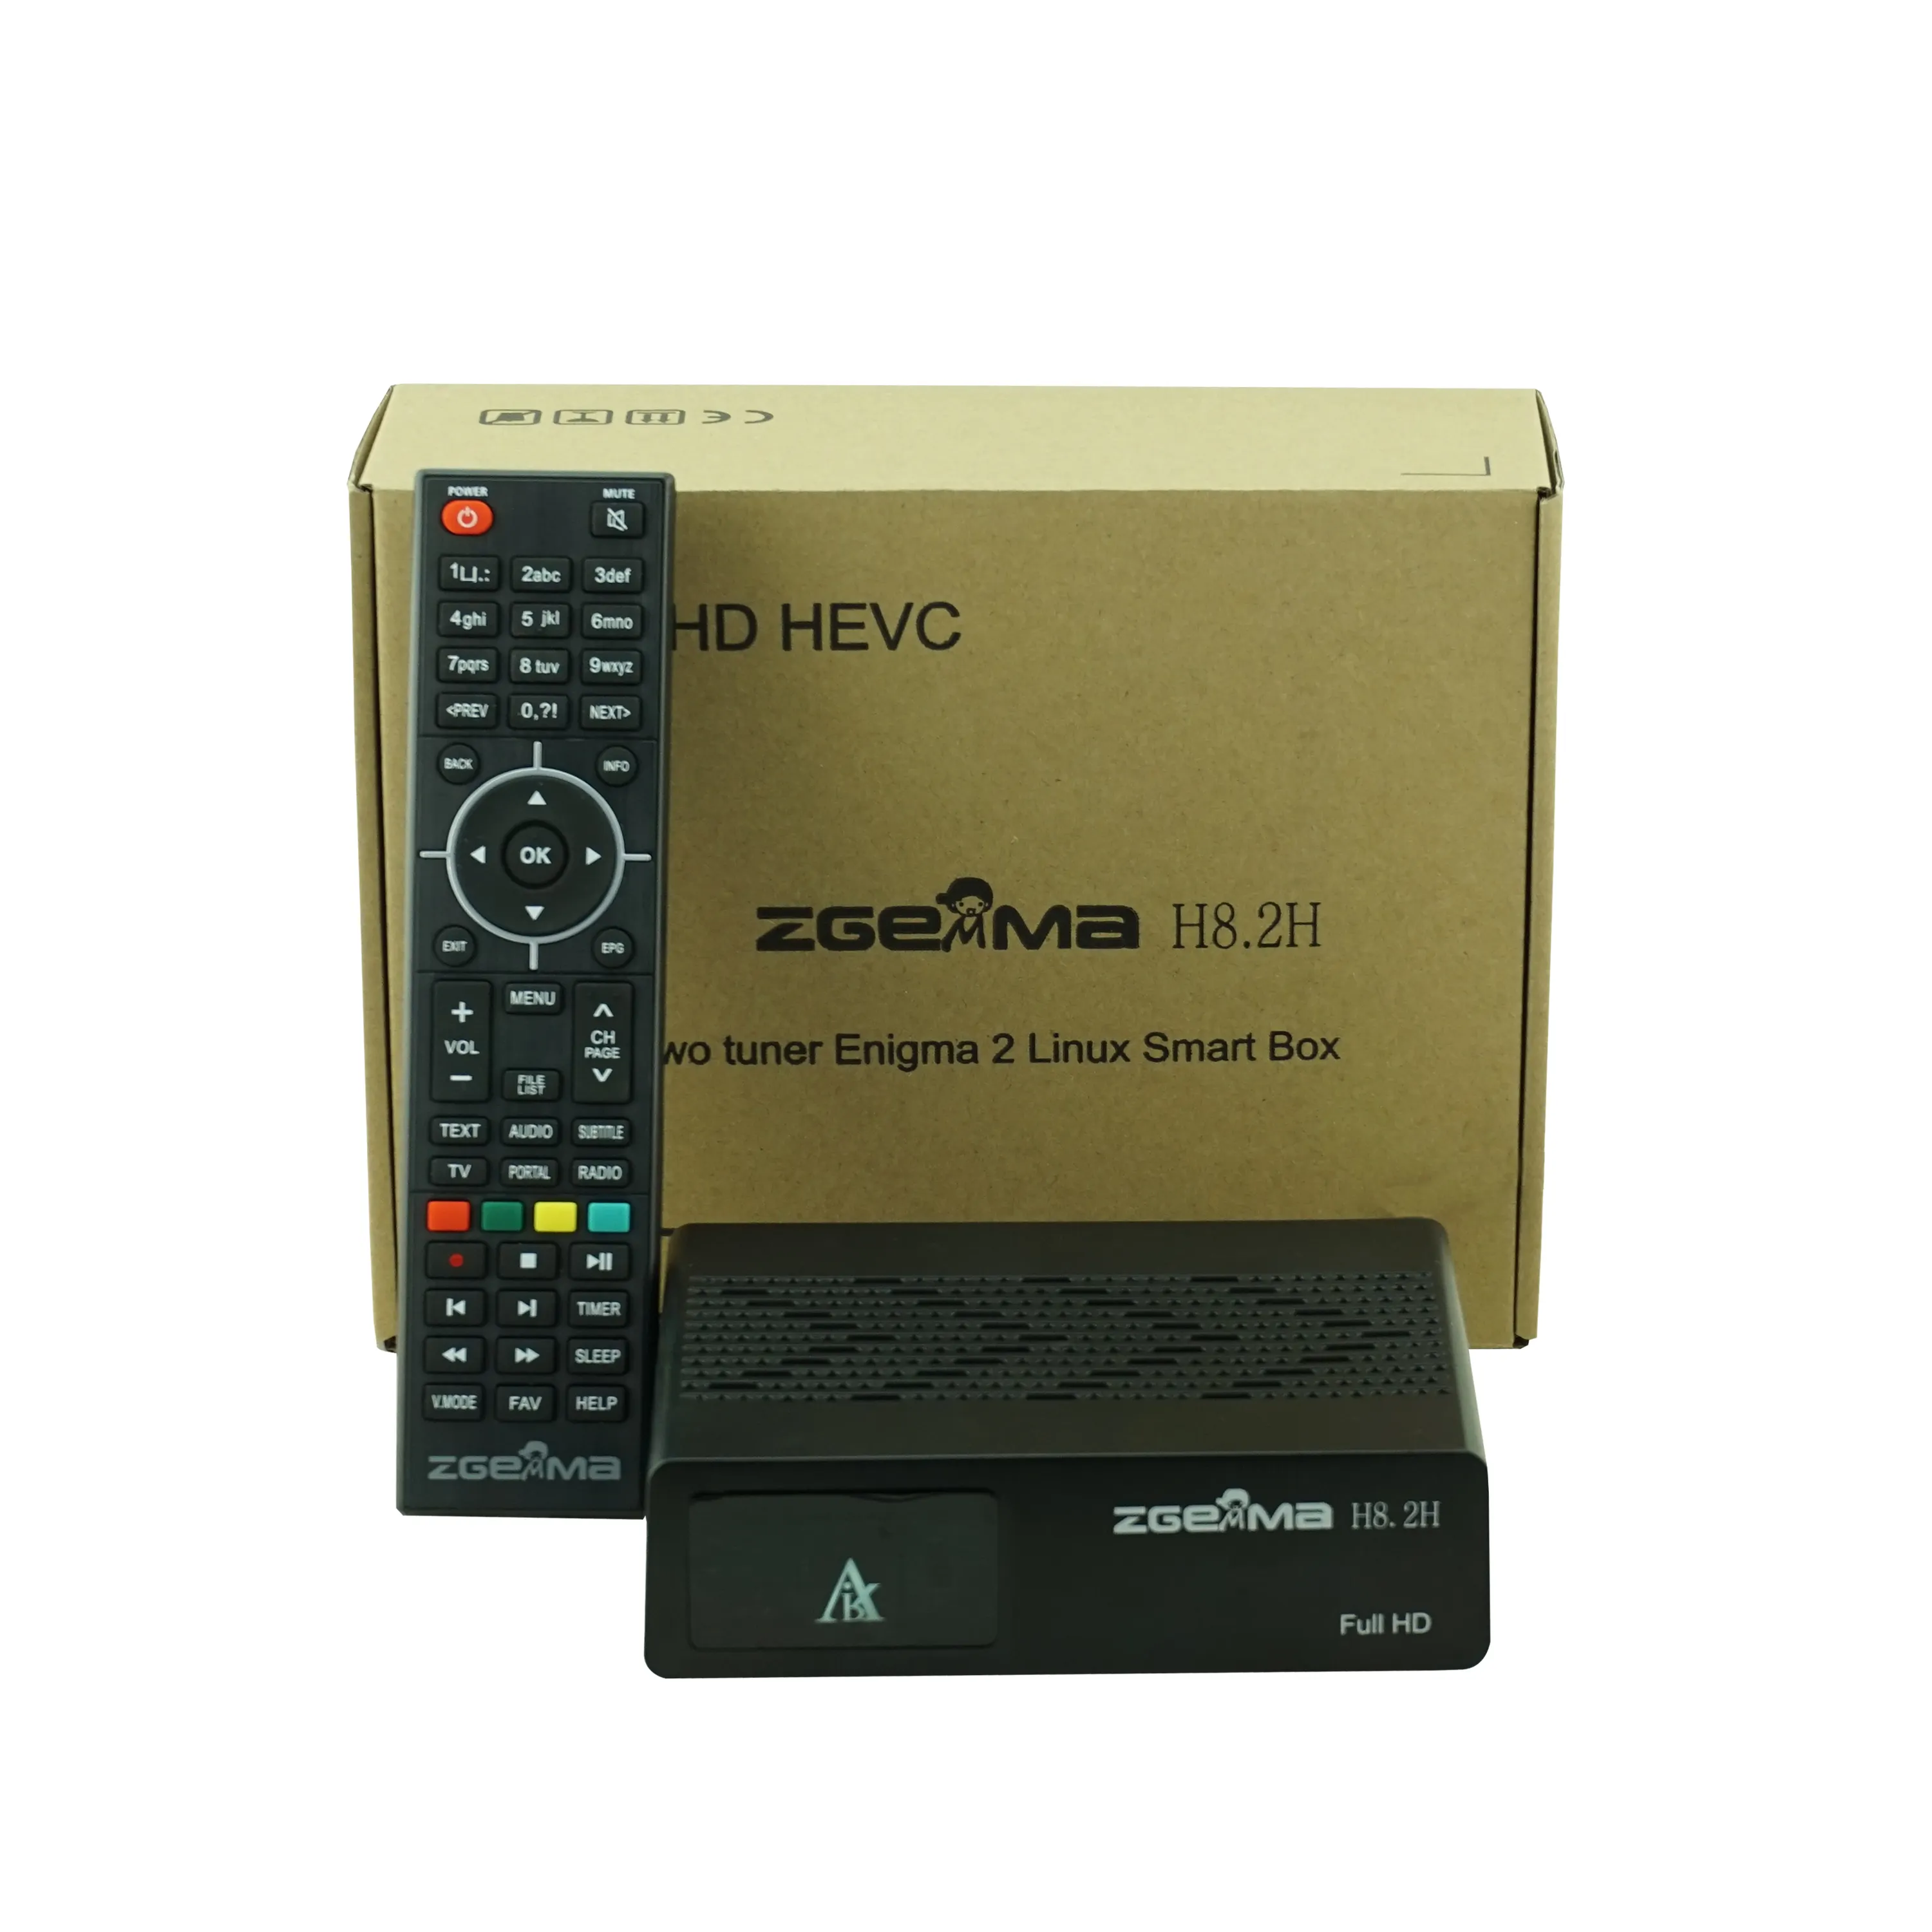 มีความบันเทิงด้วยระบบปฏิบัติการ H8.2H ลินุกซ์ DVB-S2X + DVB-T2/C ทูนเนอร์คอมโบในตัวและ Full HD 1080P